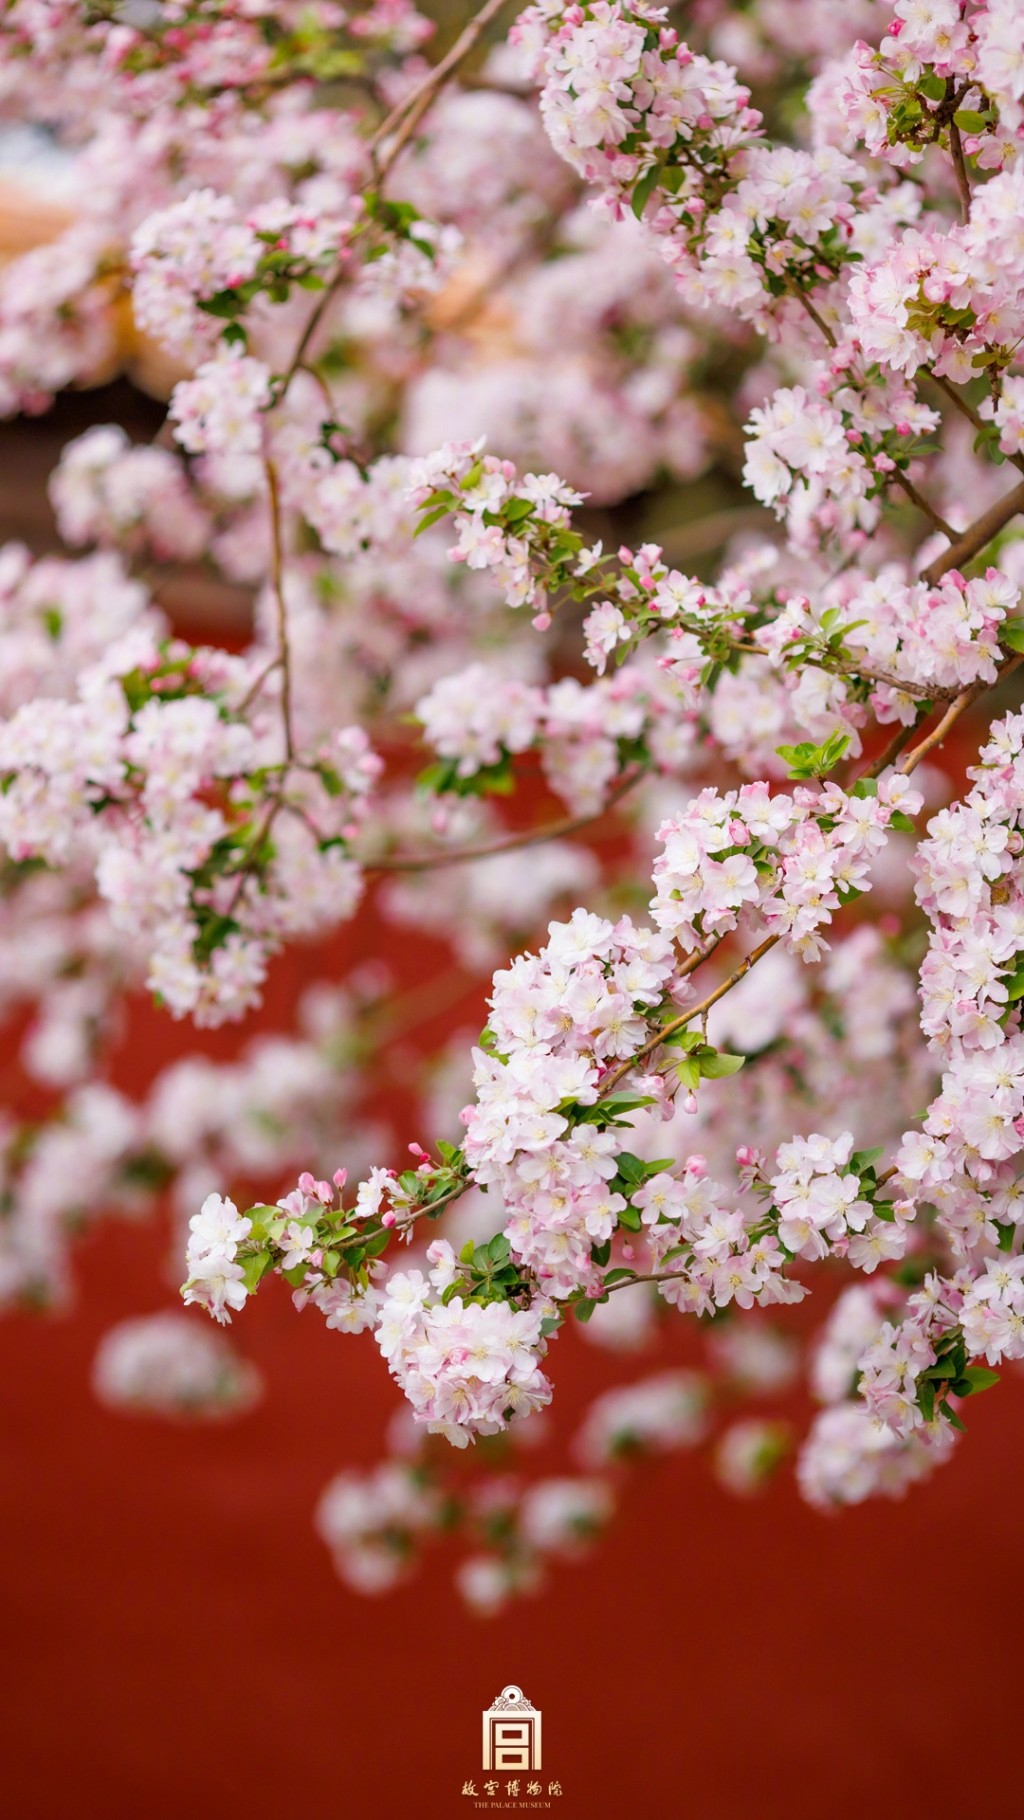 在海棠花海中爱上紫禁城的盛大春天